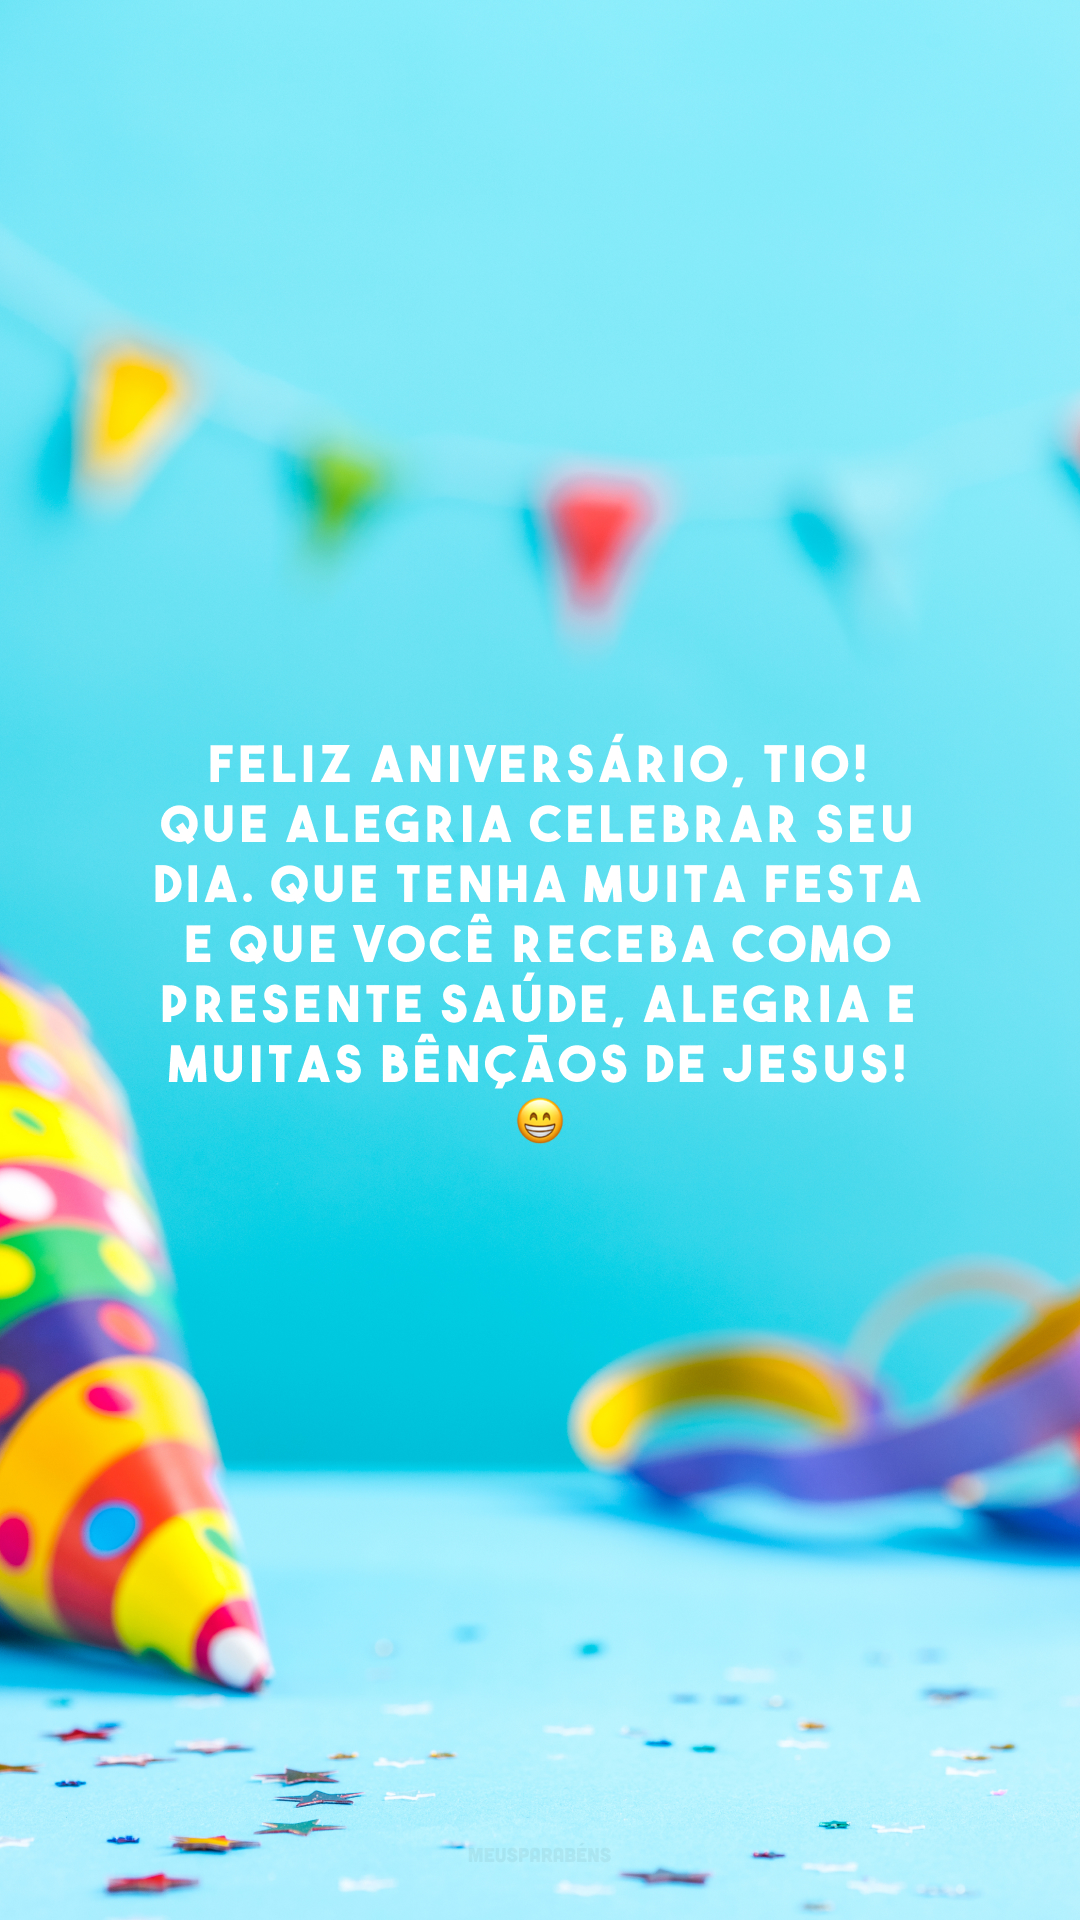 Feliz aniversário, tio! Que alegria celebrar seu dia. Que tenha muita festa e que você receba como presente saúde, alegria e muitas bênçãos de Jesus! 😁